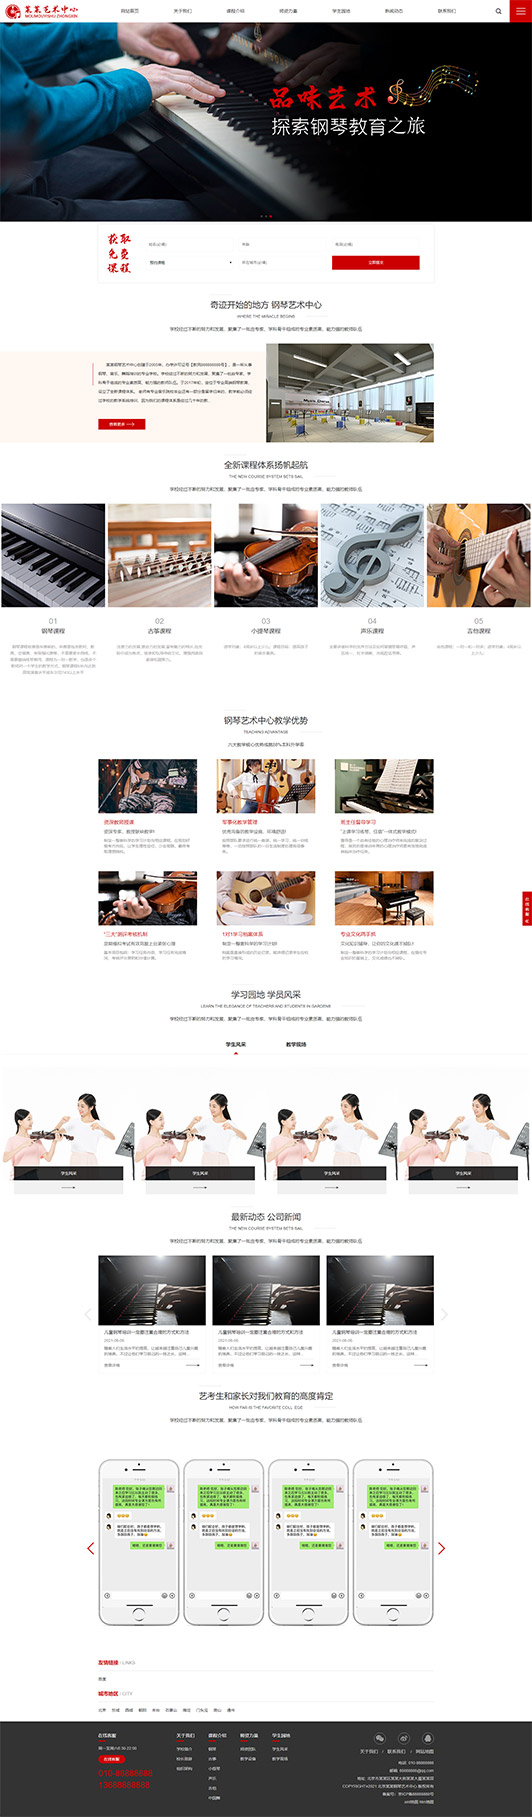 宜春钢琴艺术培训公司响应式企业网站